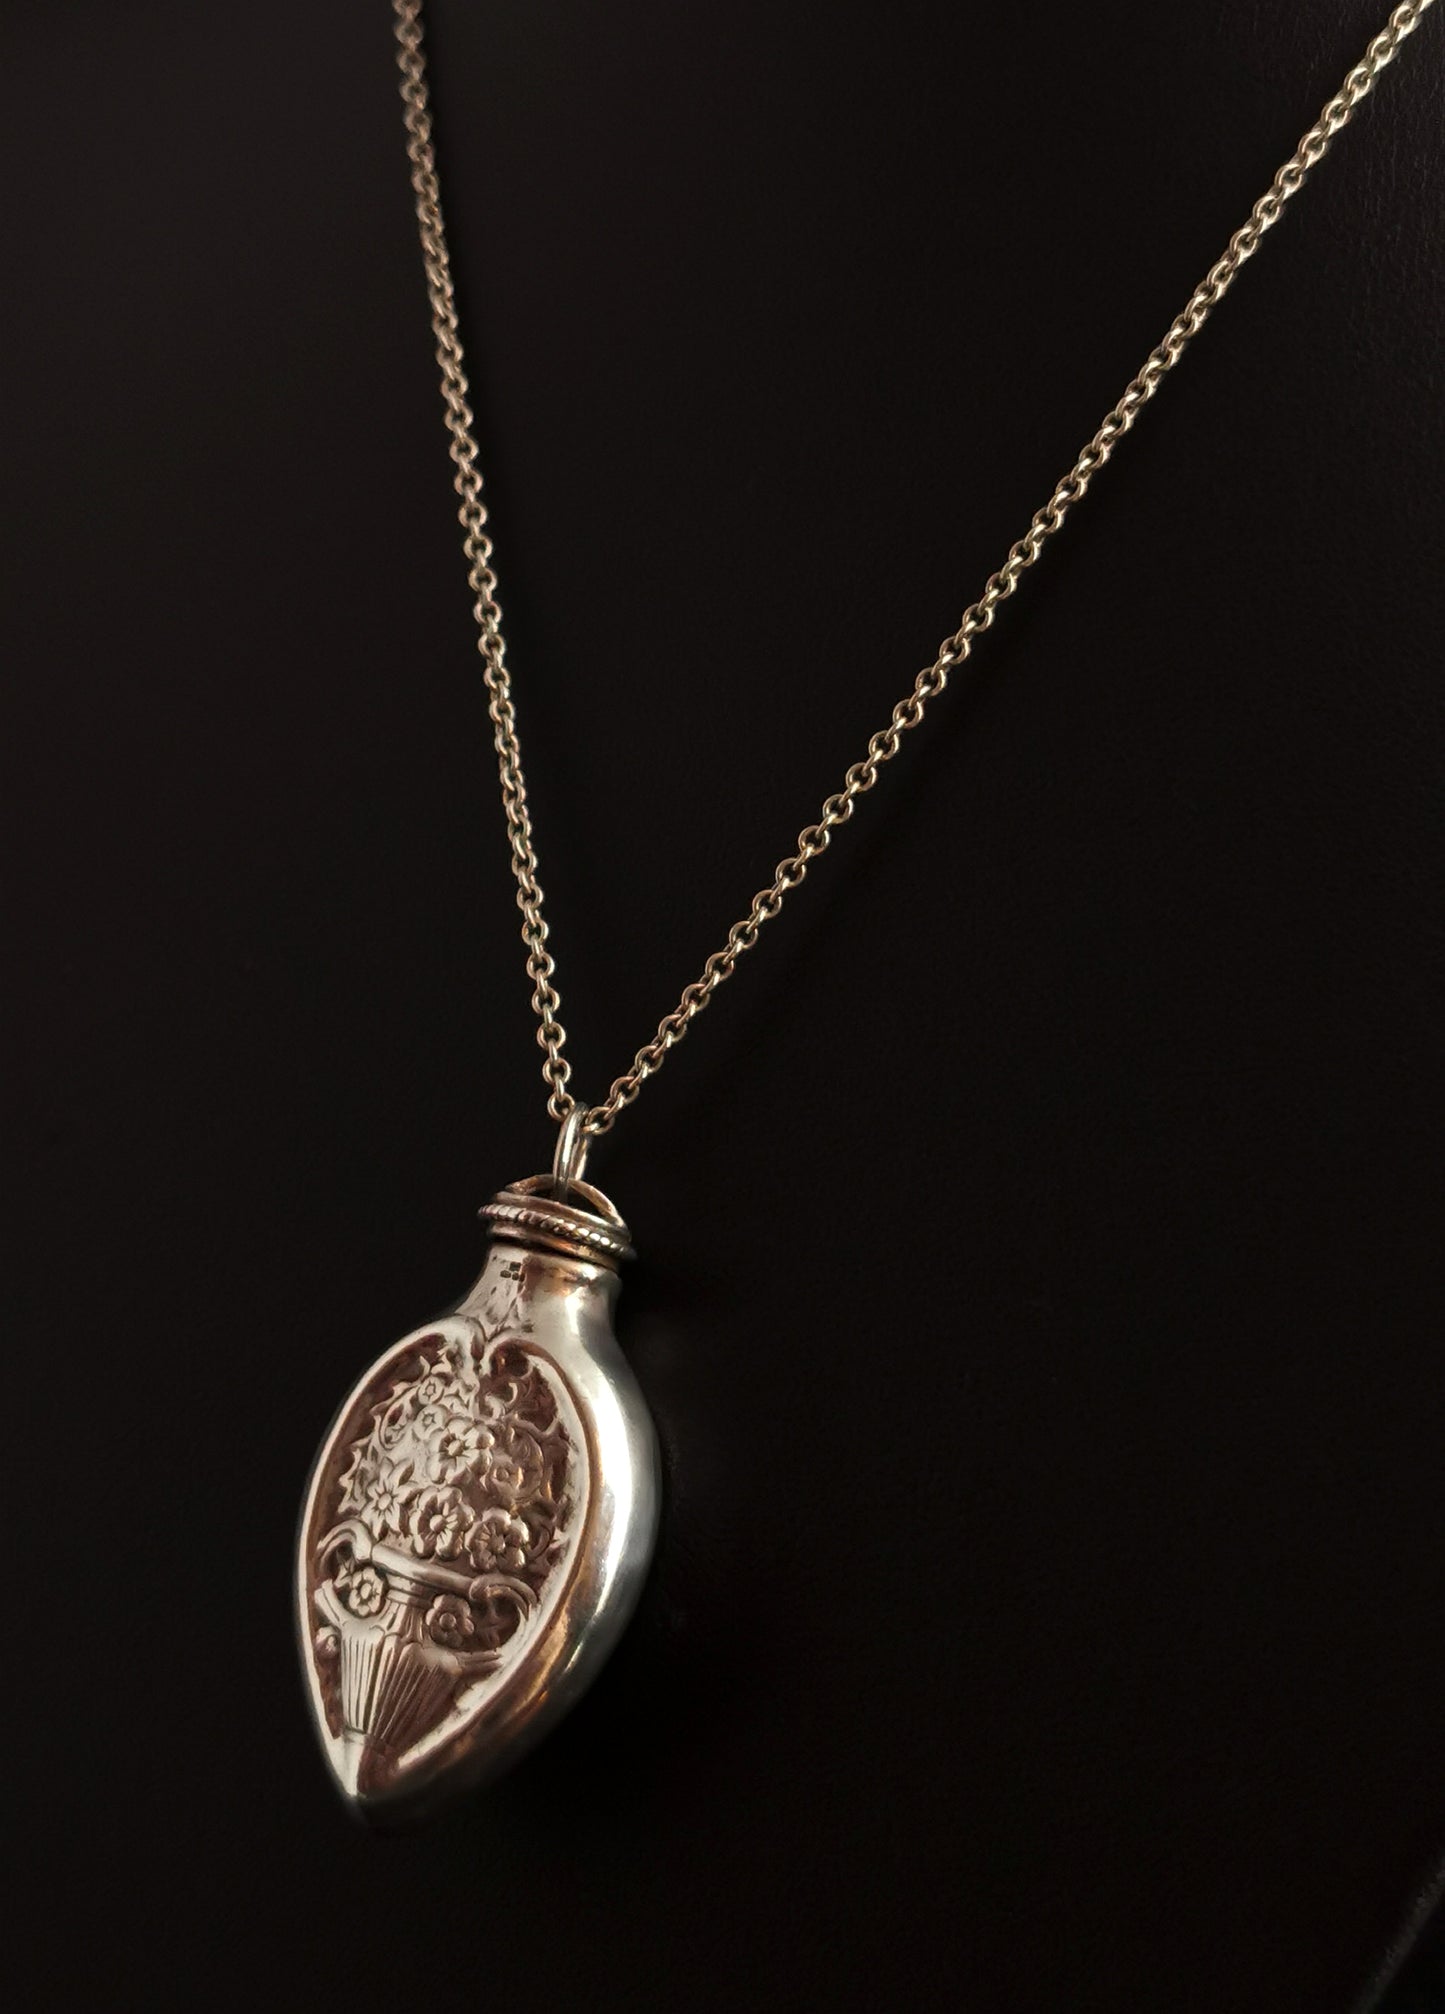 Vintage sterling silver scent bottle pendant, necklace